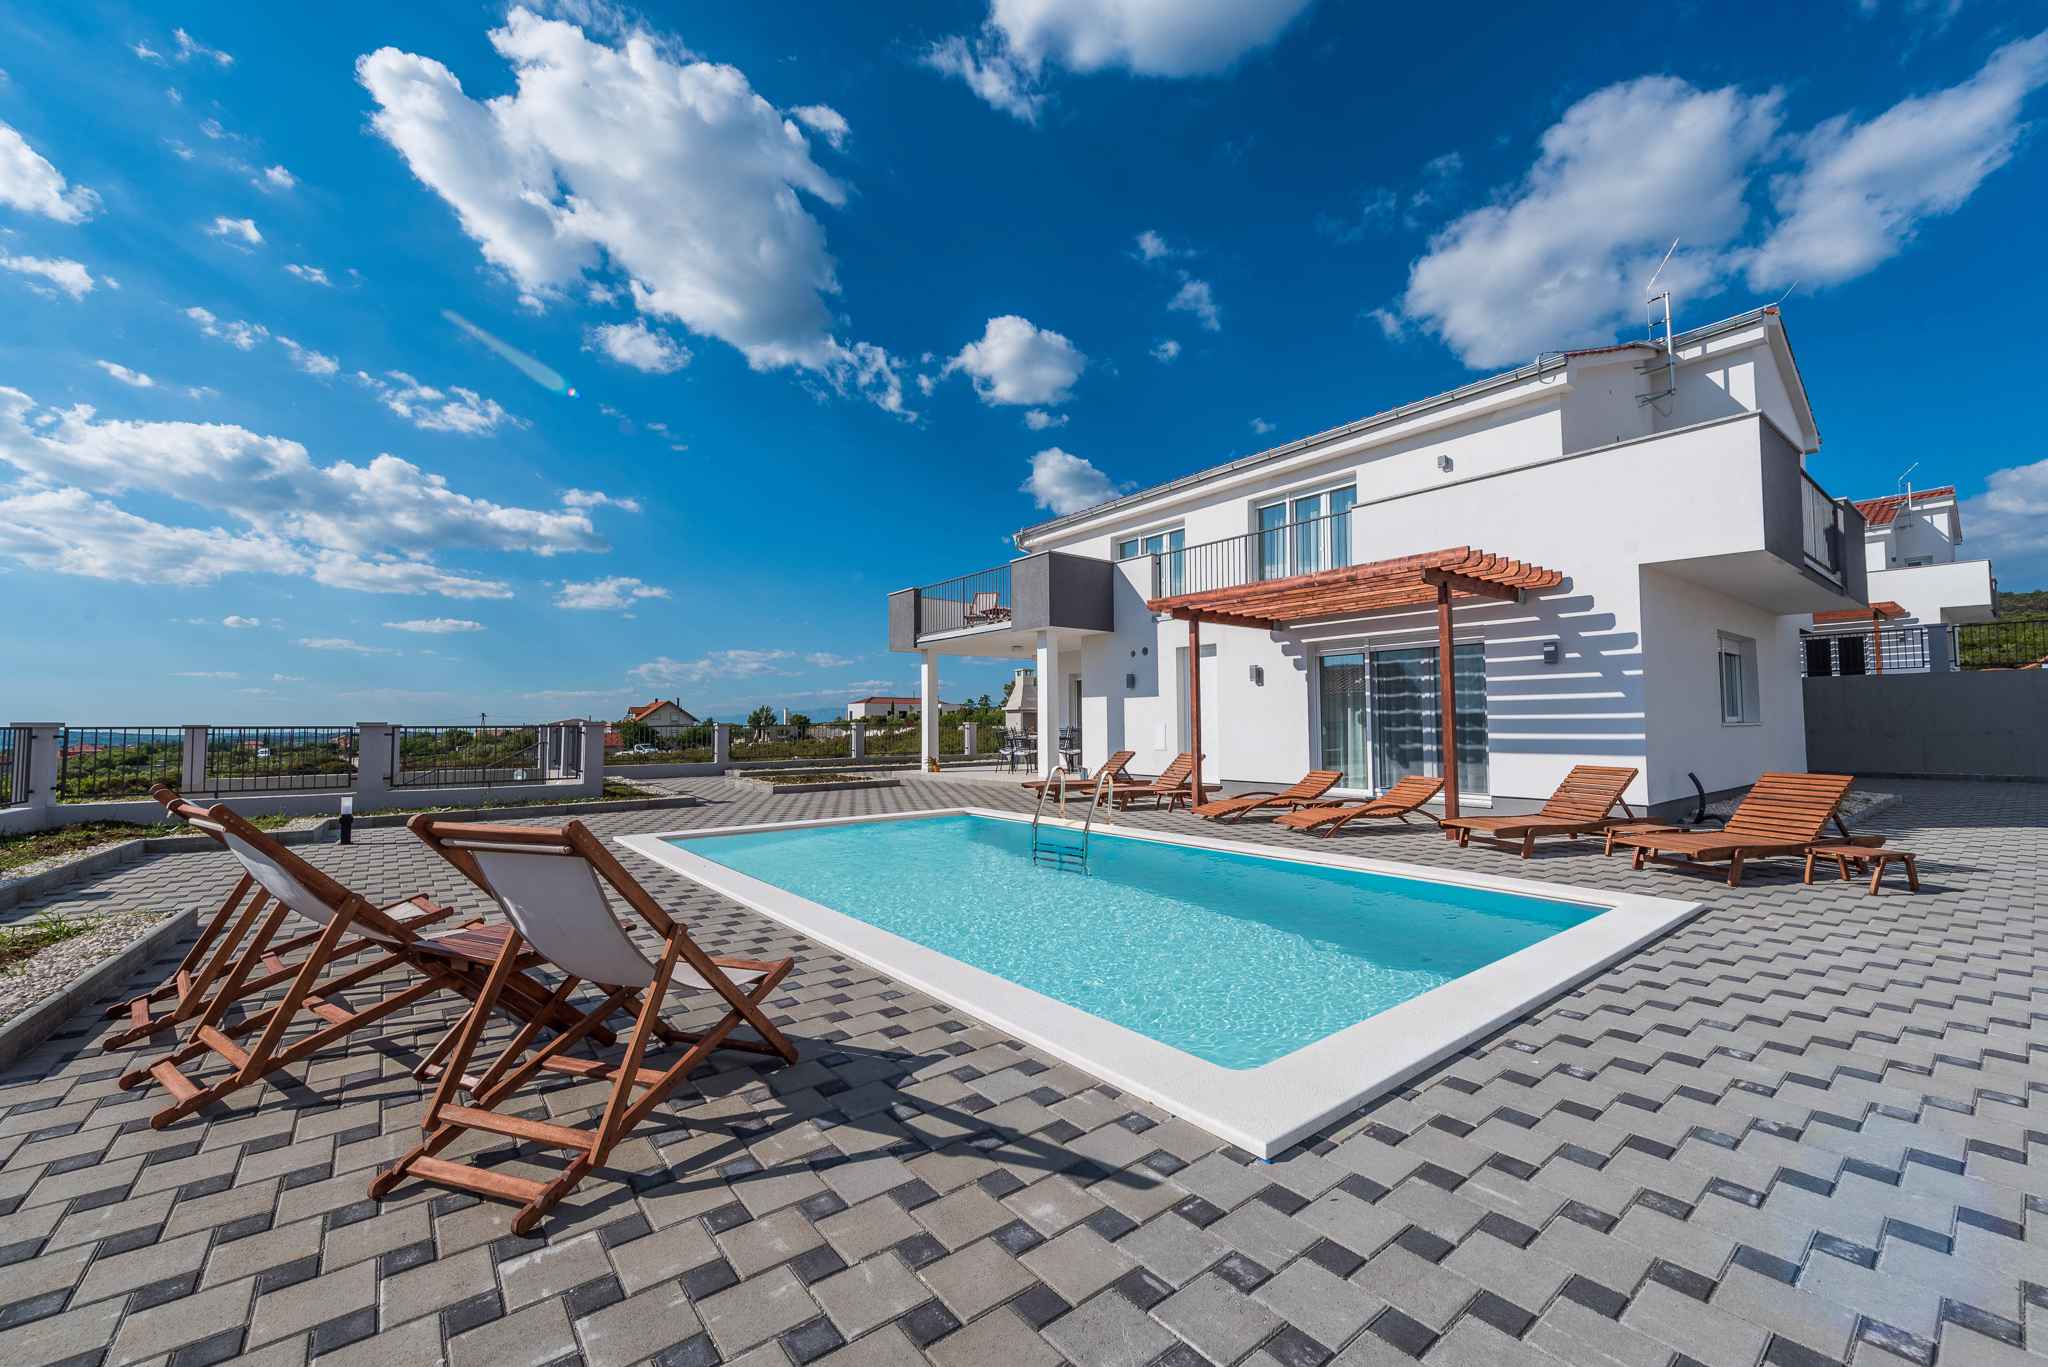 Villa mit Pool , Wlan und Klimaanlage Ferienhaus in Kroatien